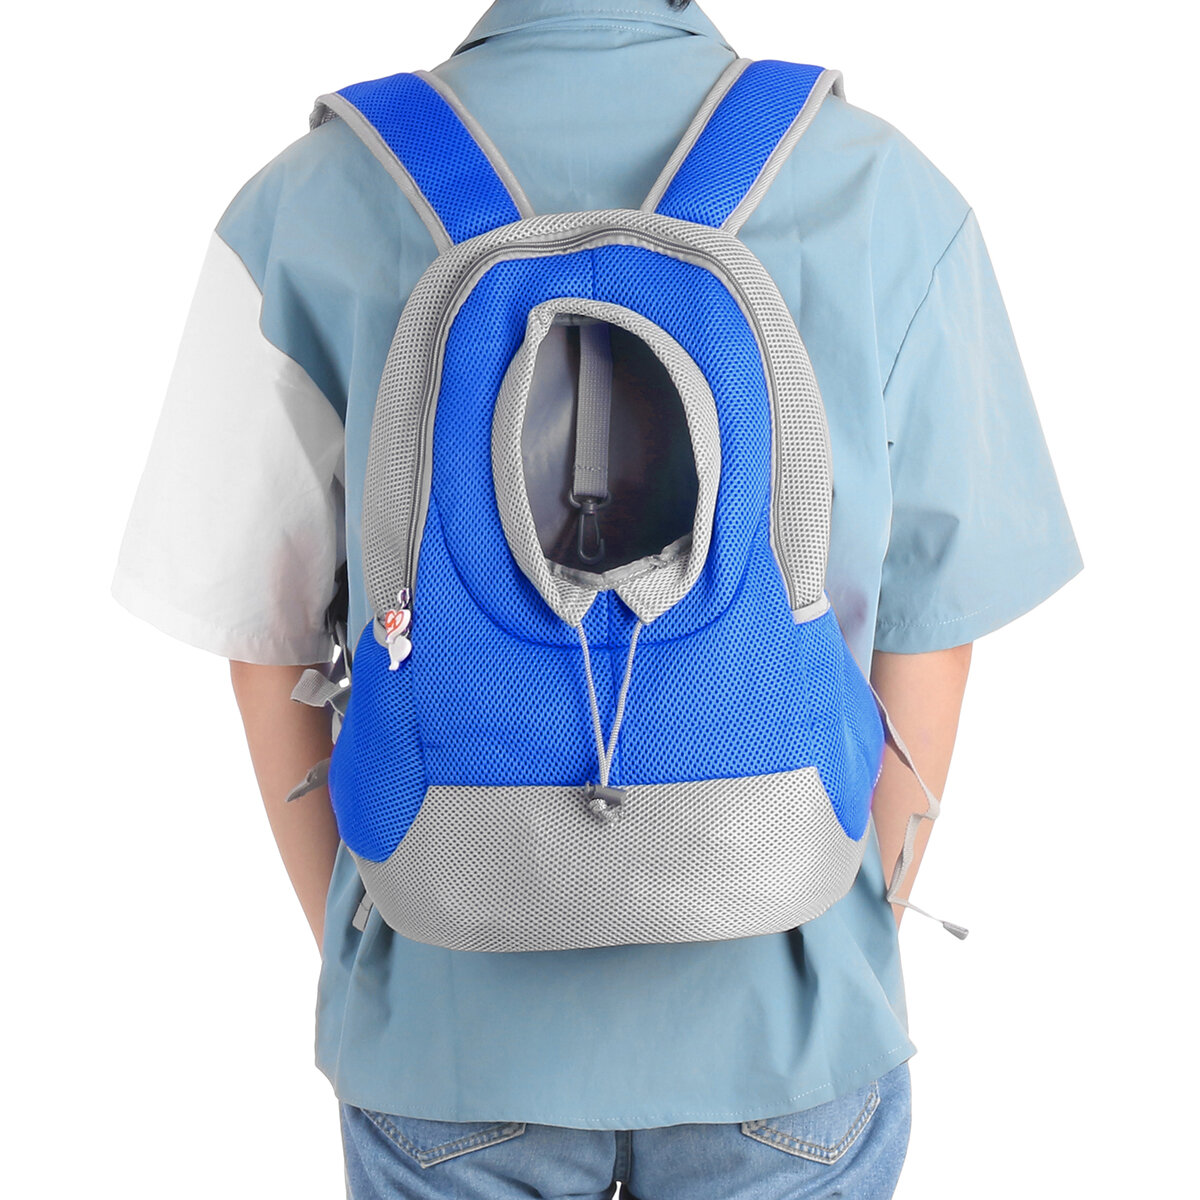 Portable Small Pet Dog Cat Carrier Travel Tote Shoulder Bag Backpack Bag